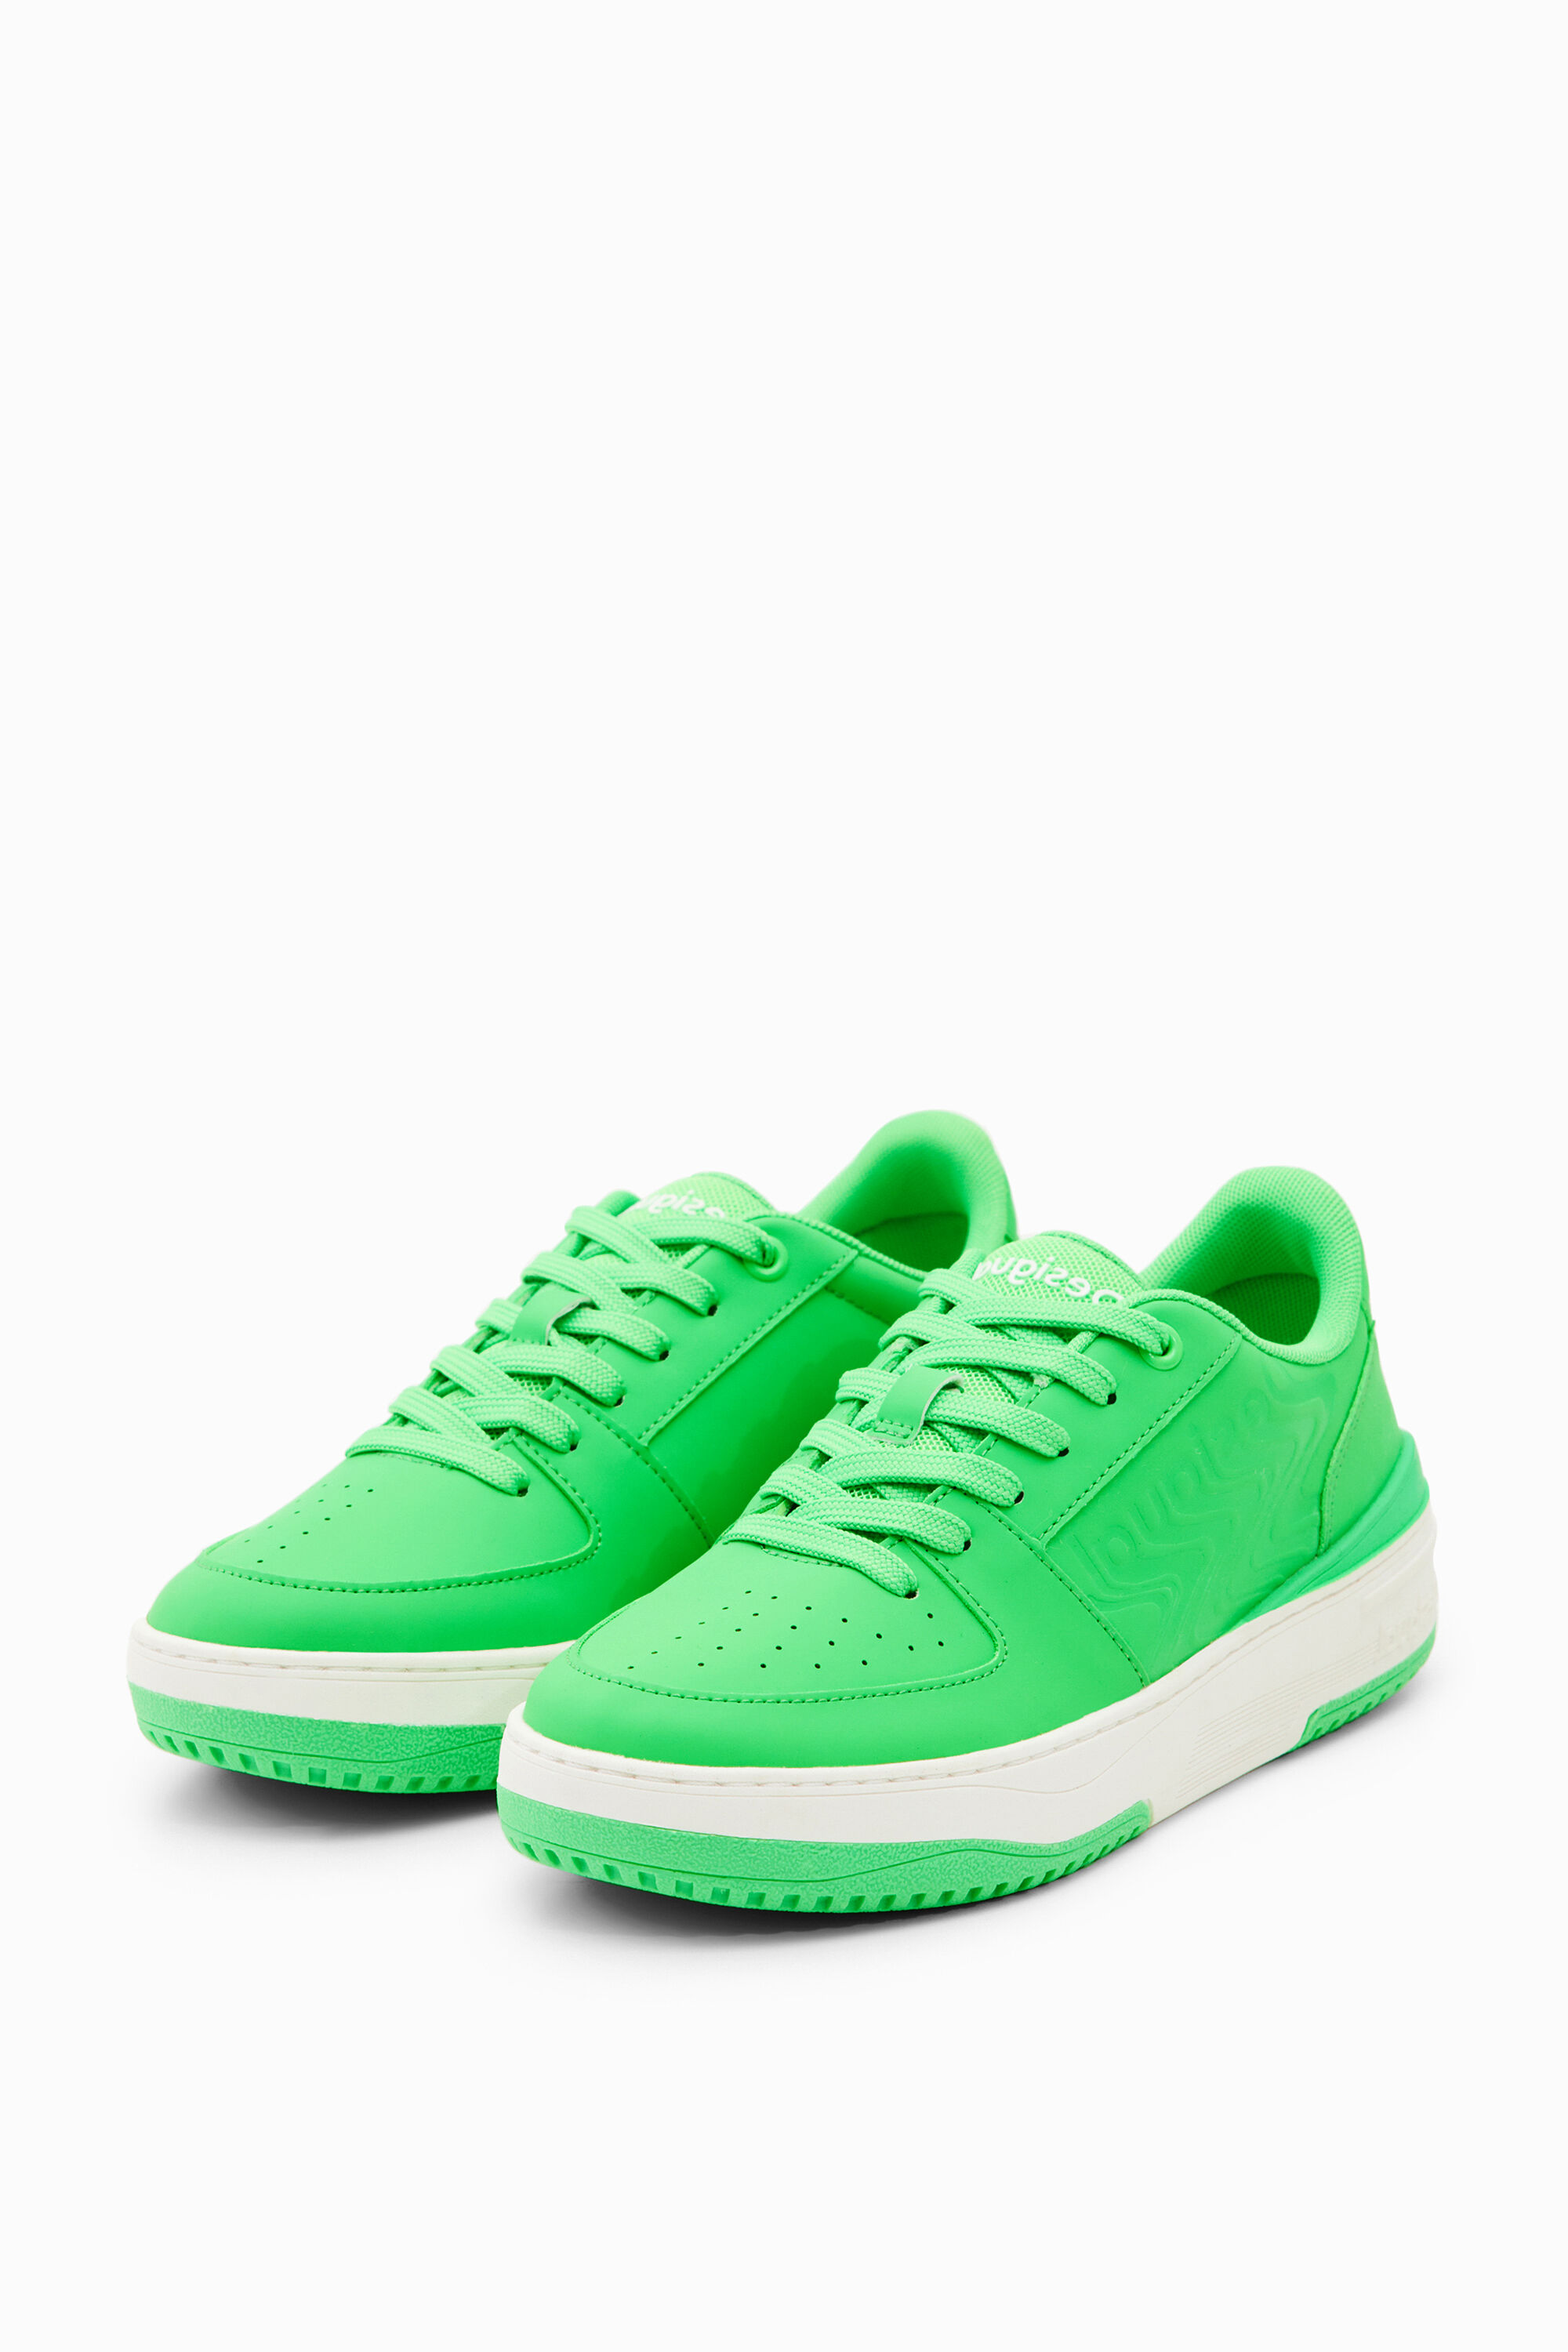 Desigual Retro Chunky Sneakers In Green